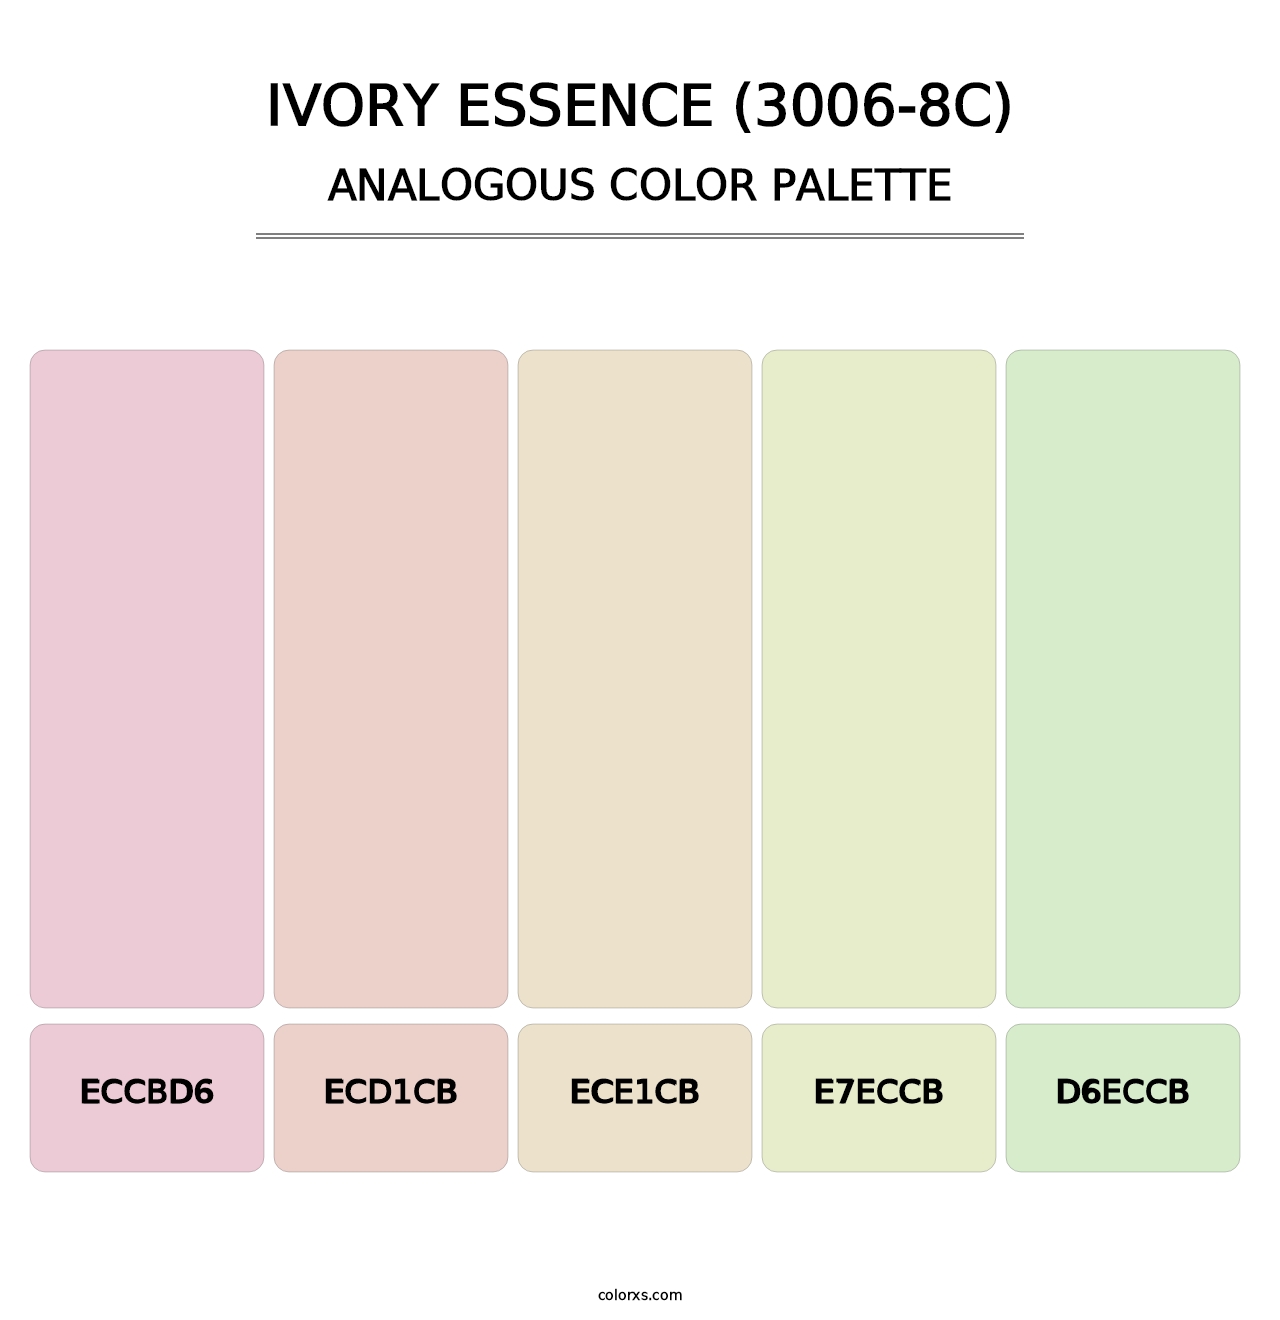 Ivory Essence (3006-8C) - Analogous Color Palette